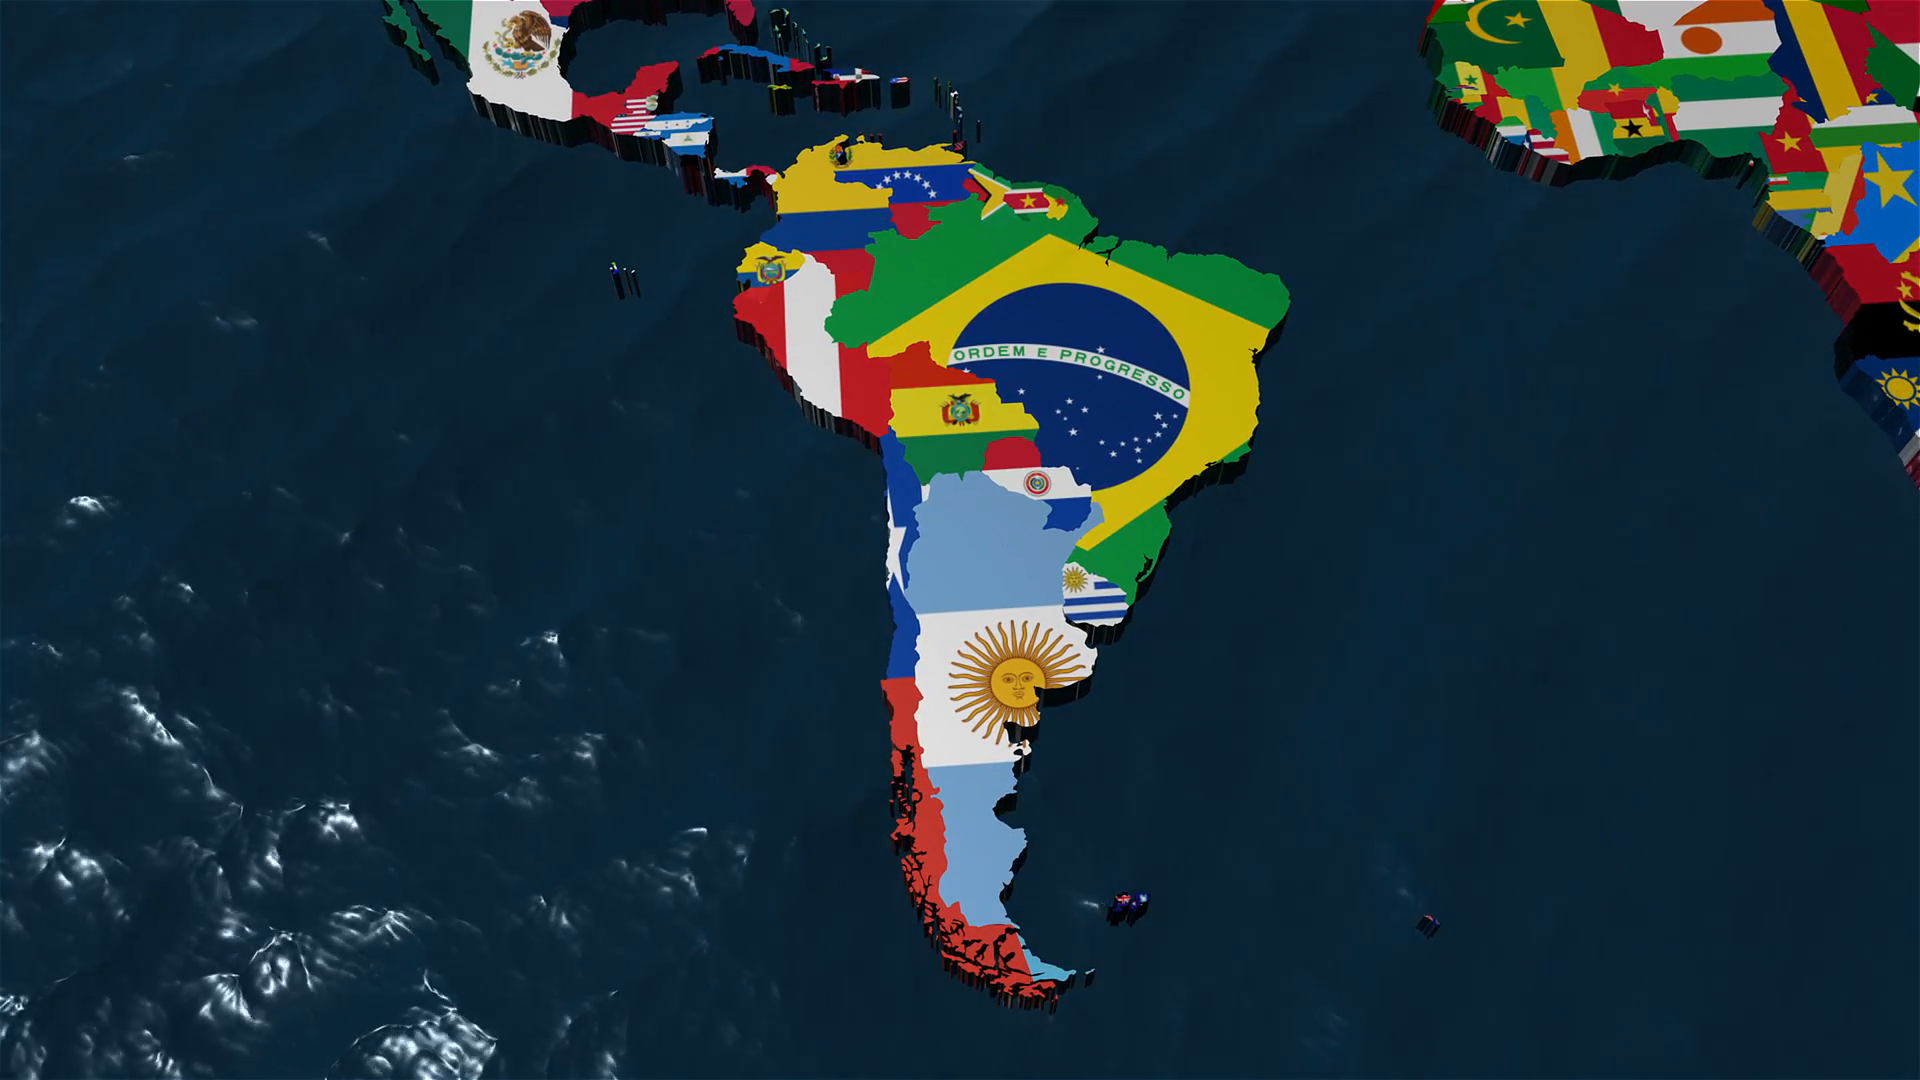 Download 3D World Map Wallpaper 